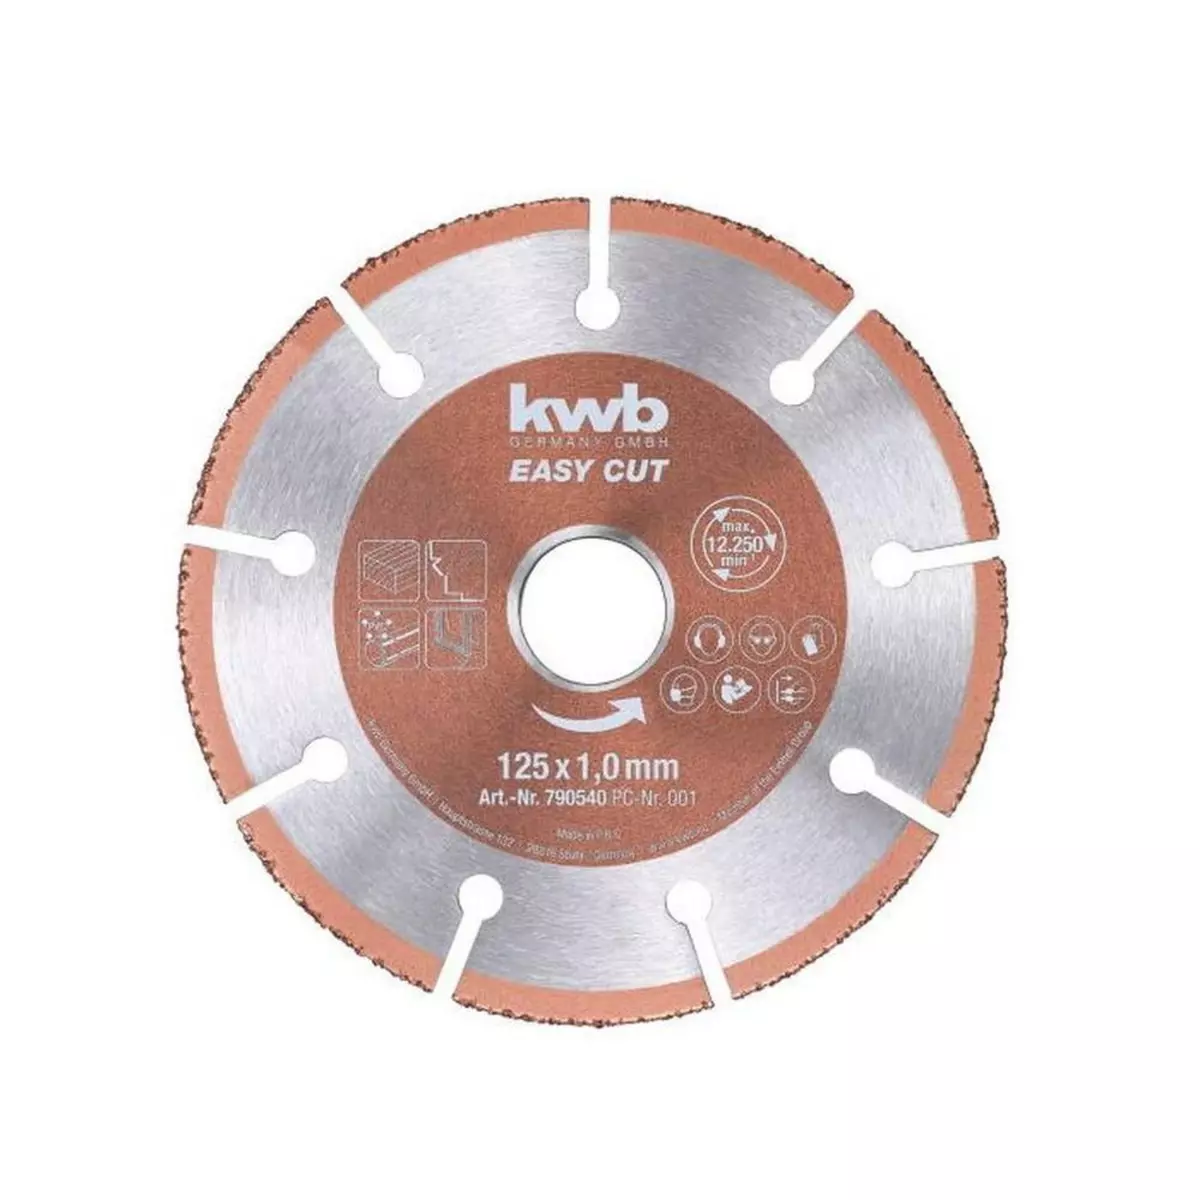 KWB Disque multi-matériaux Easy cut 125mm